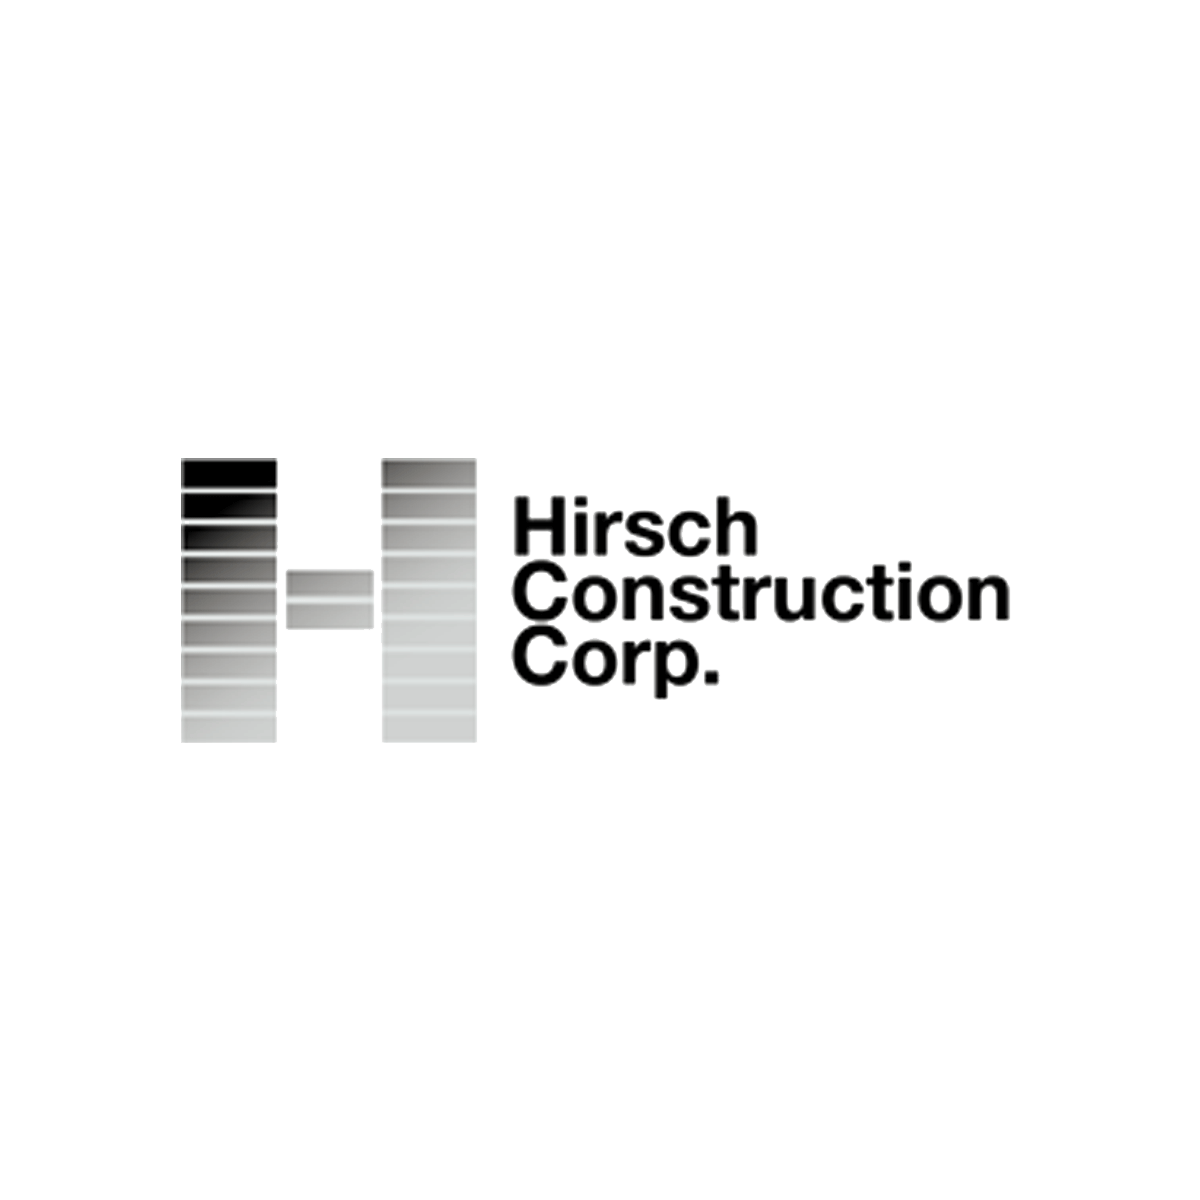 Hirsch Construction